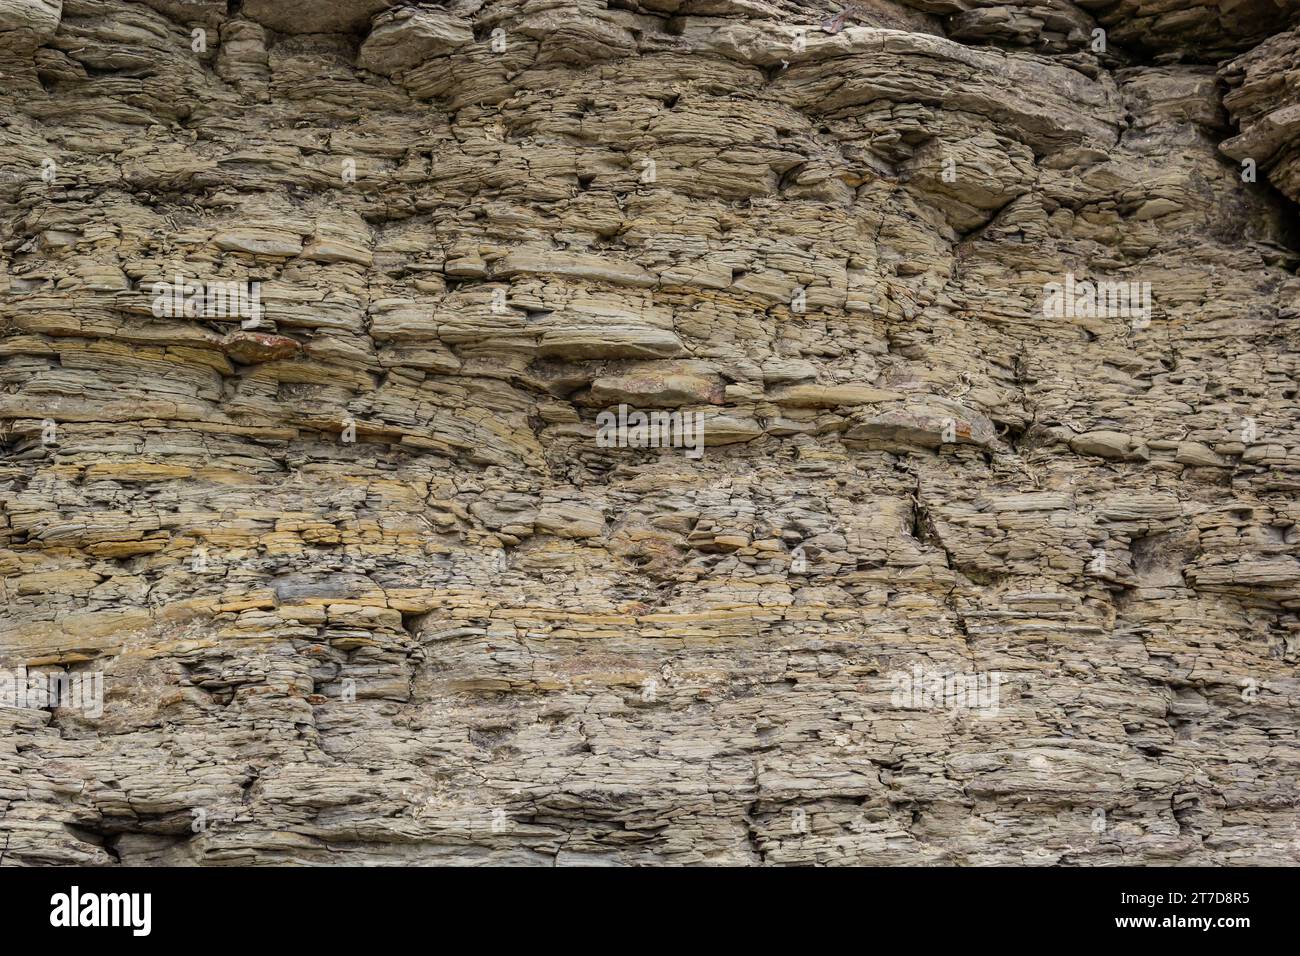 La maggior parte delle rocce esposte sulla superficie della Terra sono rocce sedimentarie. Le rocce sedimentarie sono formate particella per particella e letto per letto, e il laye Foto Stock